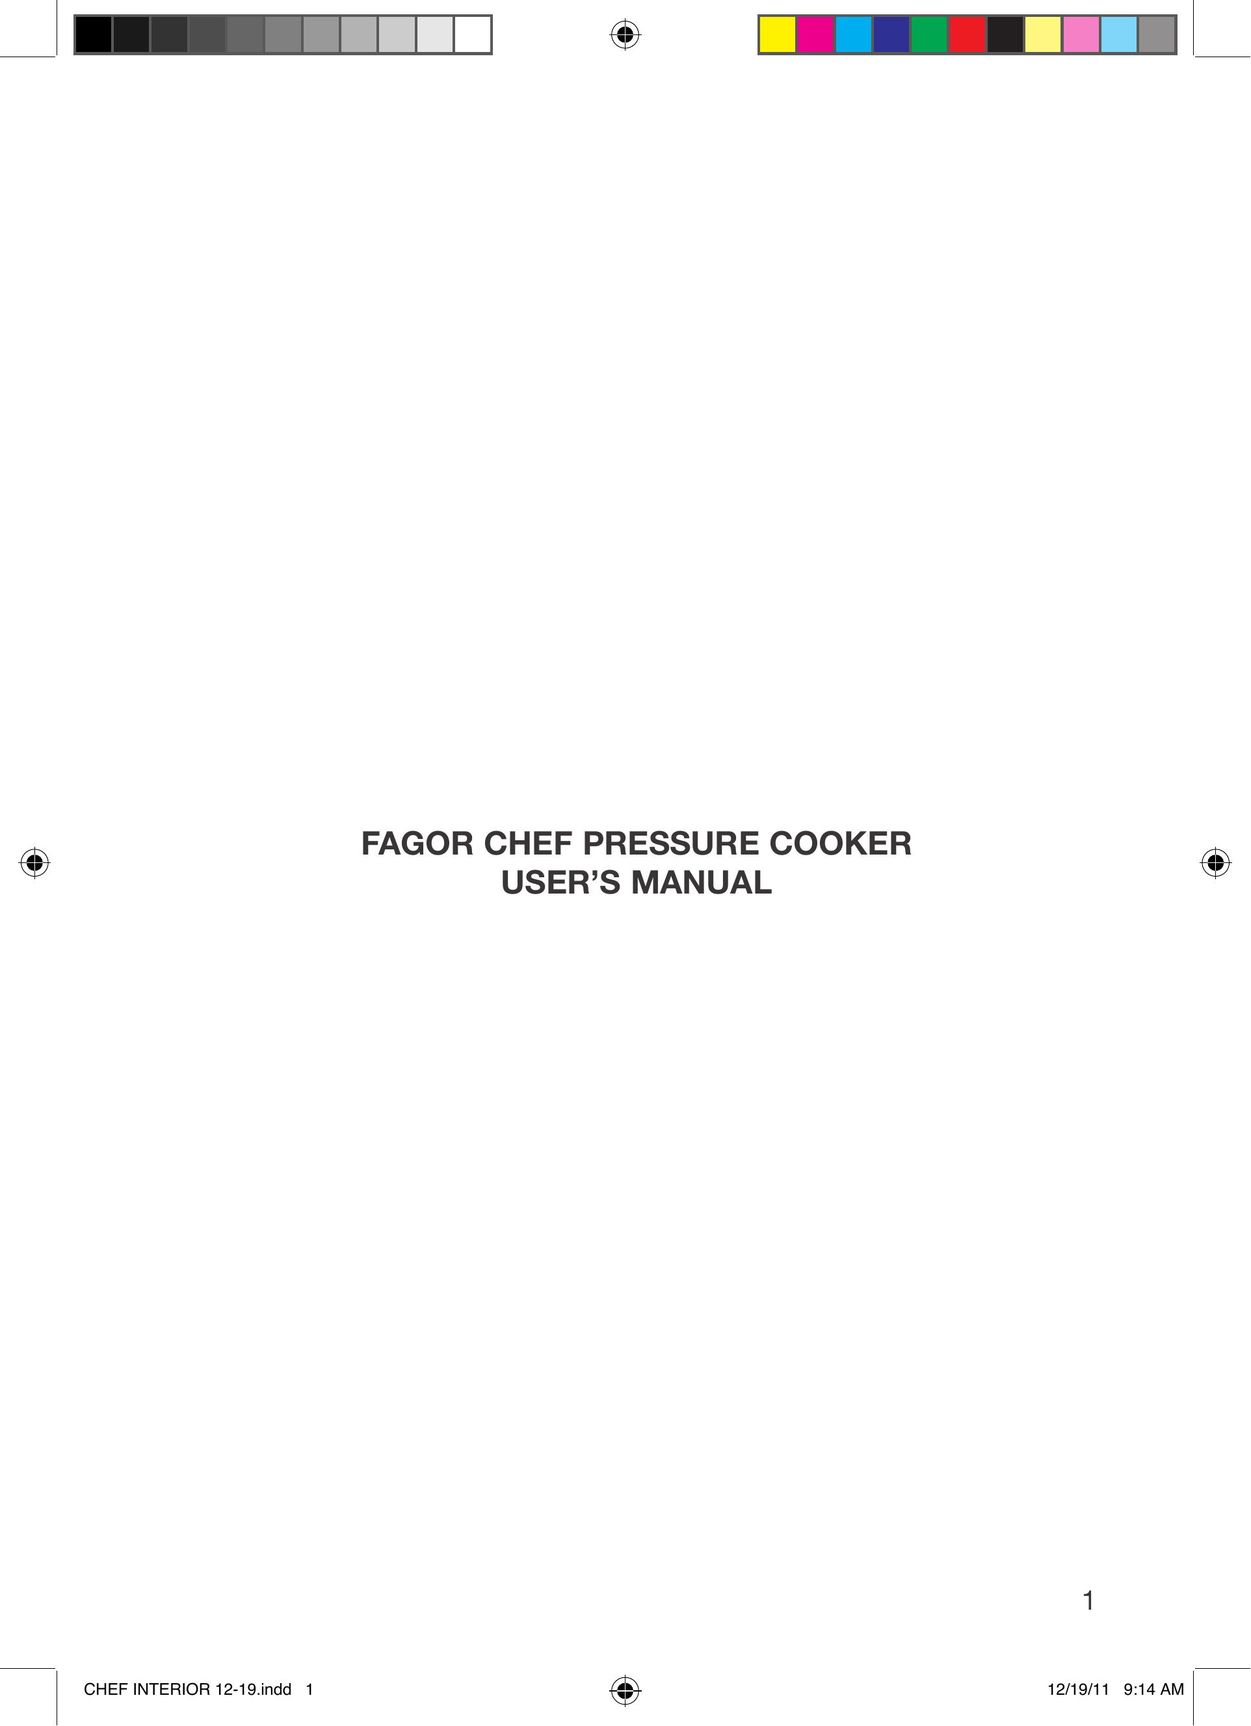 Fagor America 918010052 Electric Pressure Cooker User Manual